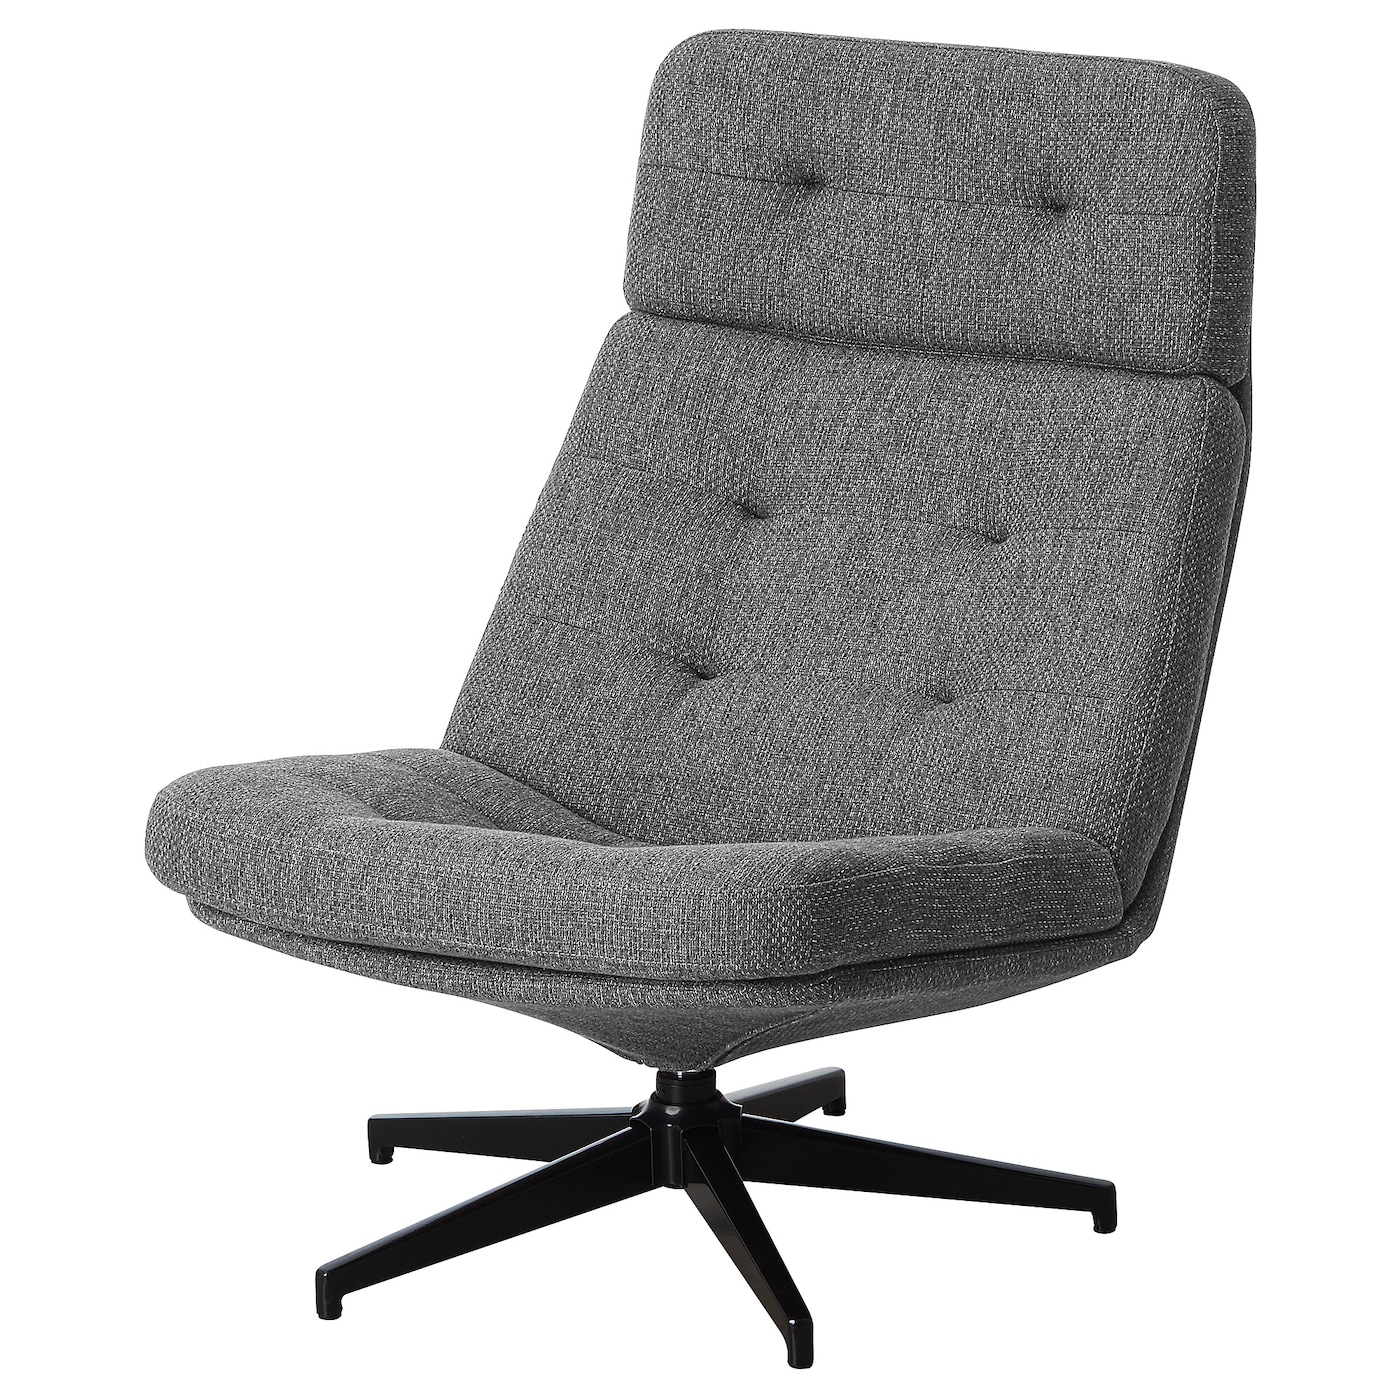 ХАВБЕРГ Вращающееся кресло, Лейде серый/черный HAVBERG IKEA кресло офисное вращающееся arlon единый размер серый